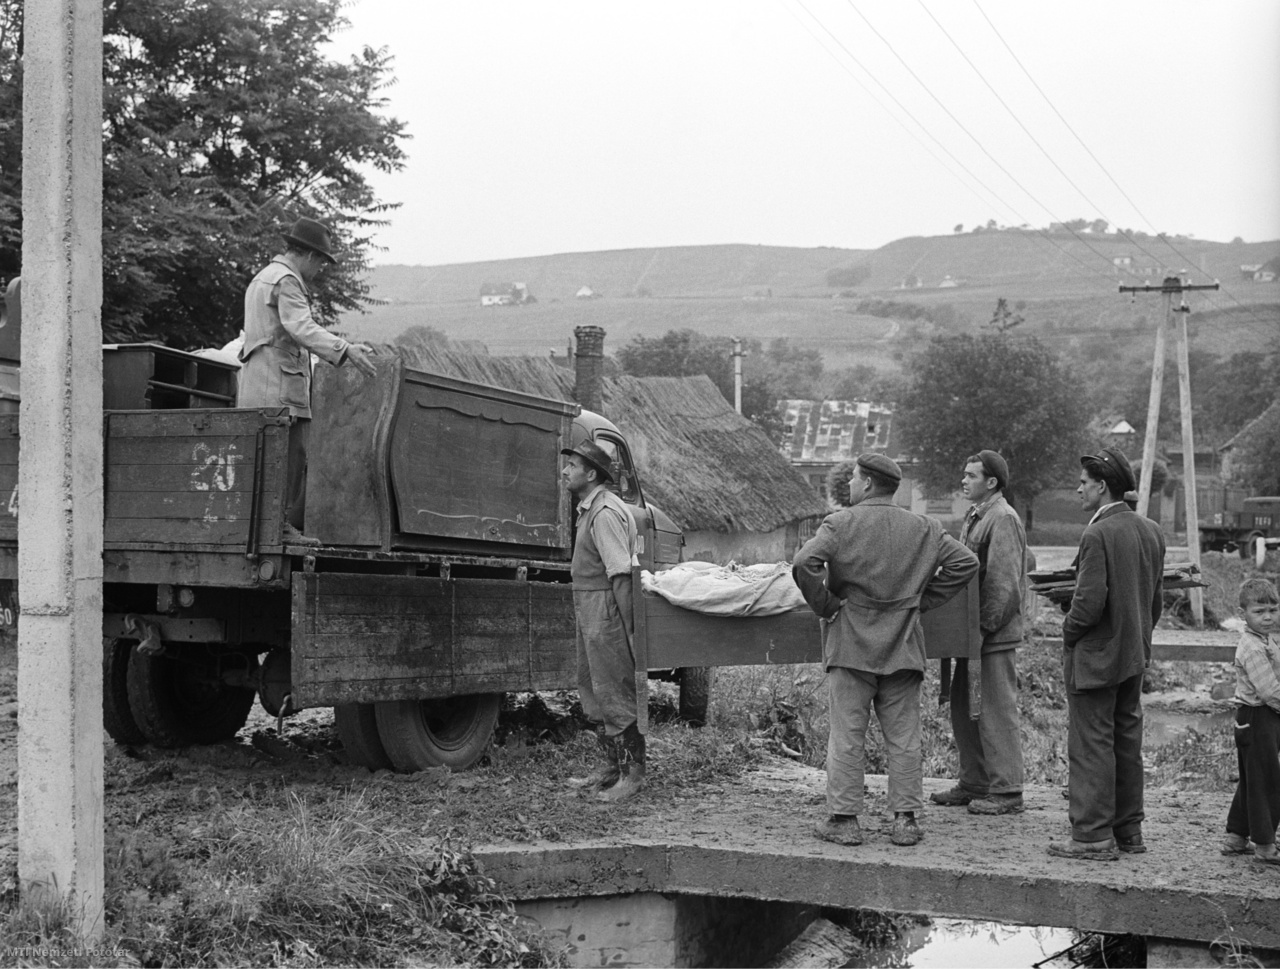 Szekszárd, 1961. június 11. A szekszárdi Séd patak áradása után a lakosság kiköltözik az életveszélyessé vált házakból. Értékeiket teherautóra pakolják